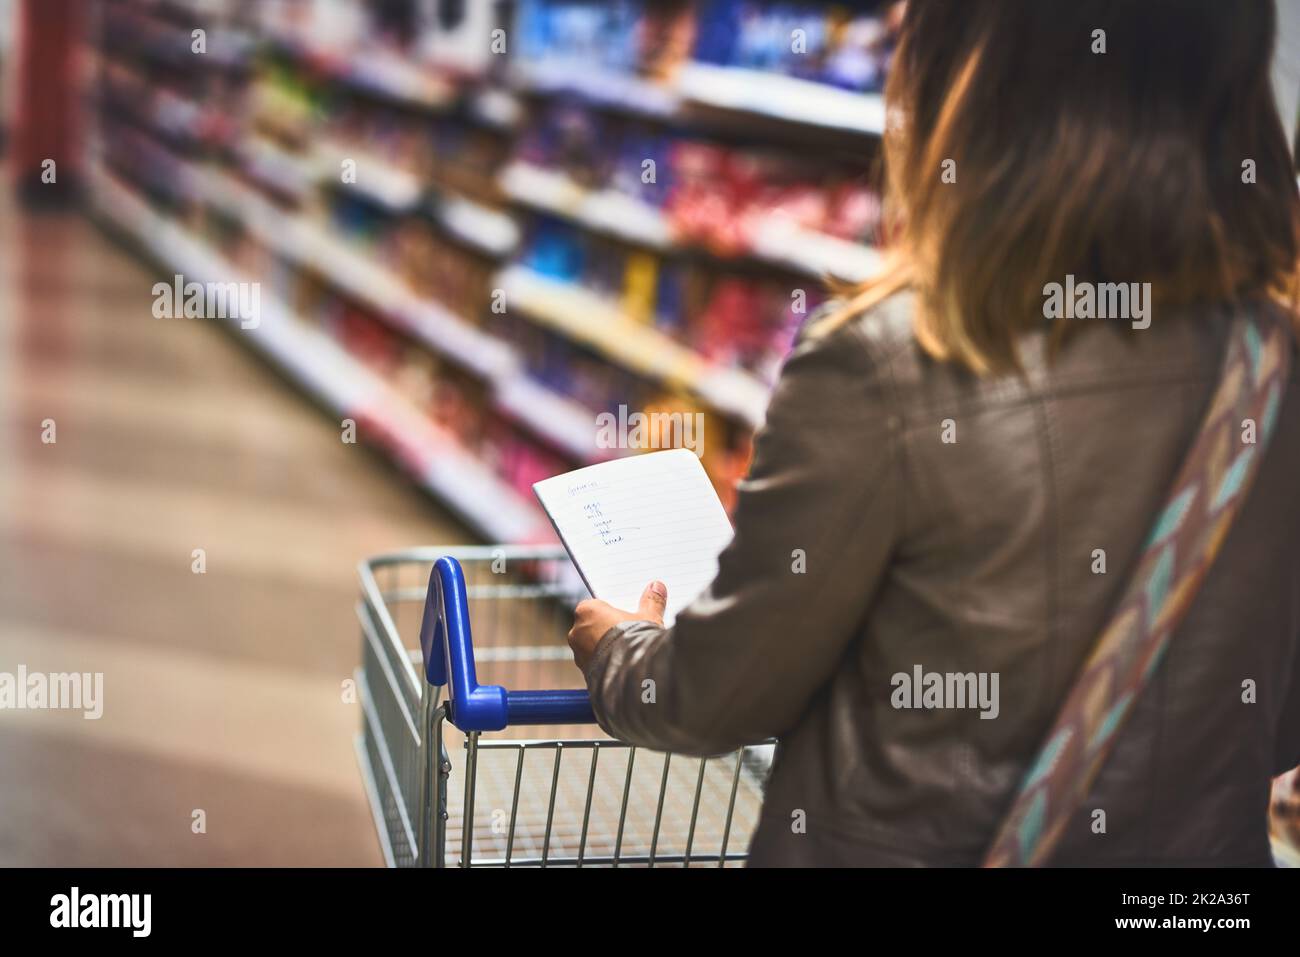 Der Profi beim Lebensmitteleinkauf. Kurzer Schuss einer Frau, die mit einer Liste in einem Lebensmittelgeschäft einkauft. Stockfoto